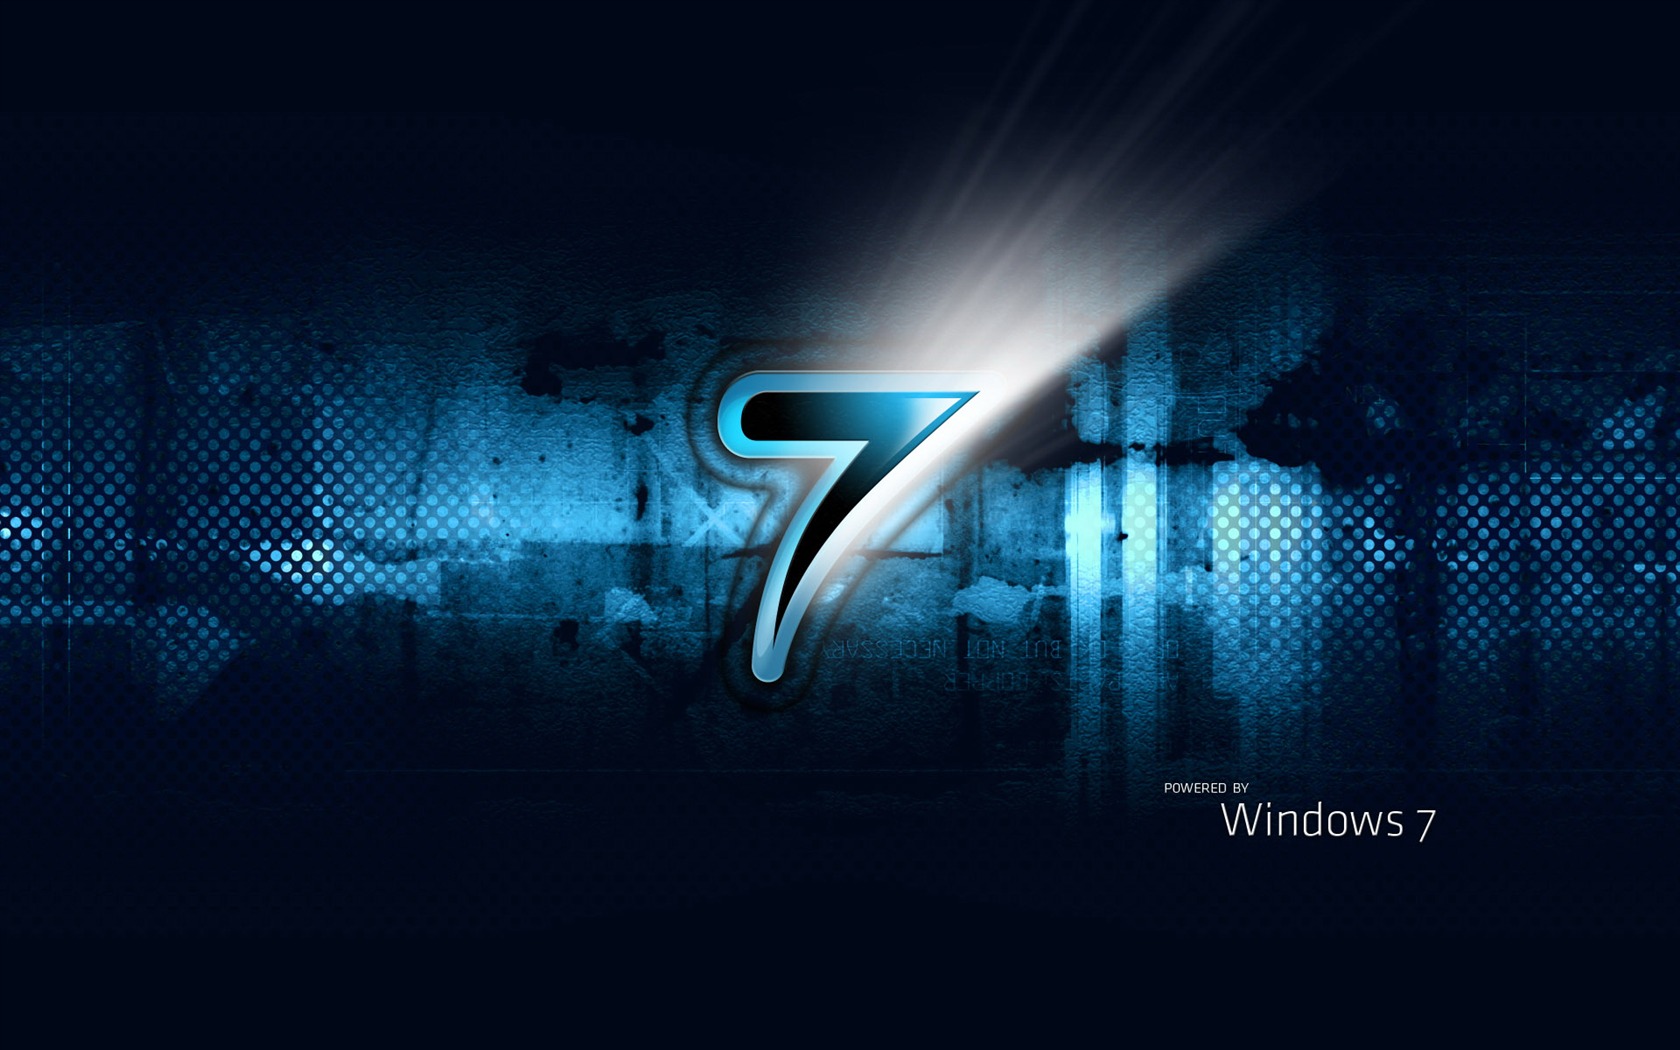 Windows7 theme wallpaper (2) #8 - 1680x1050